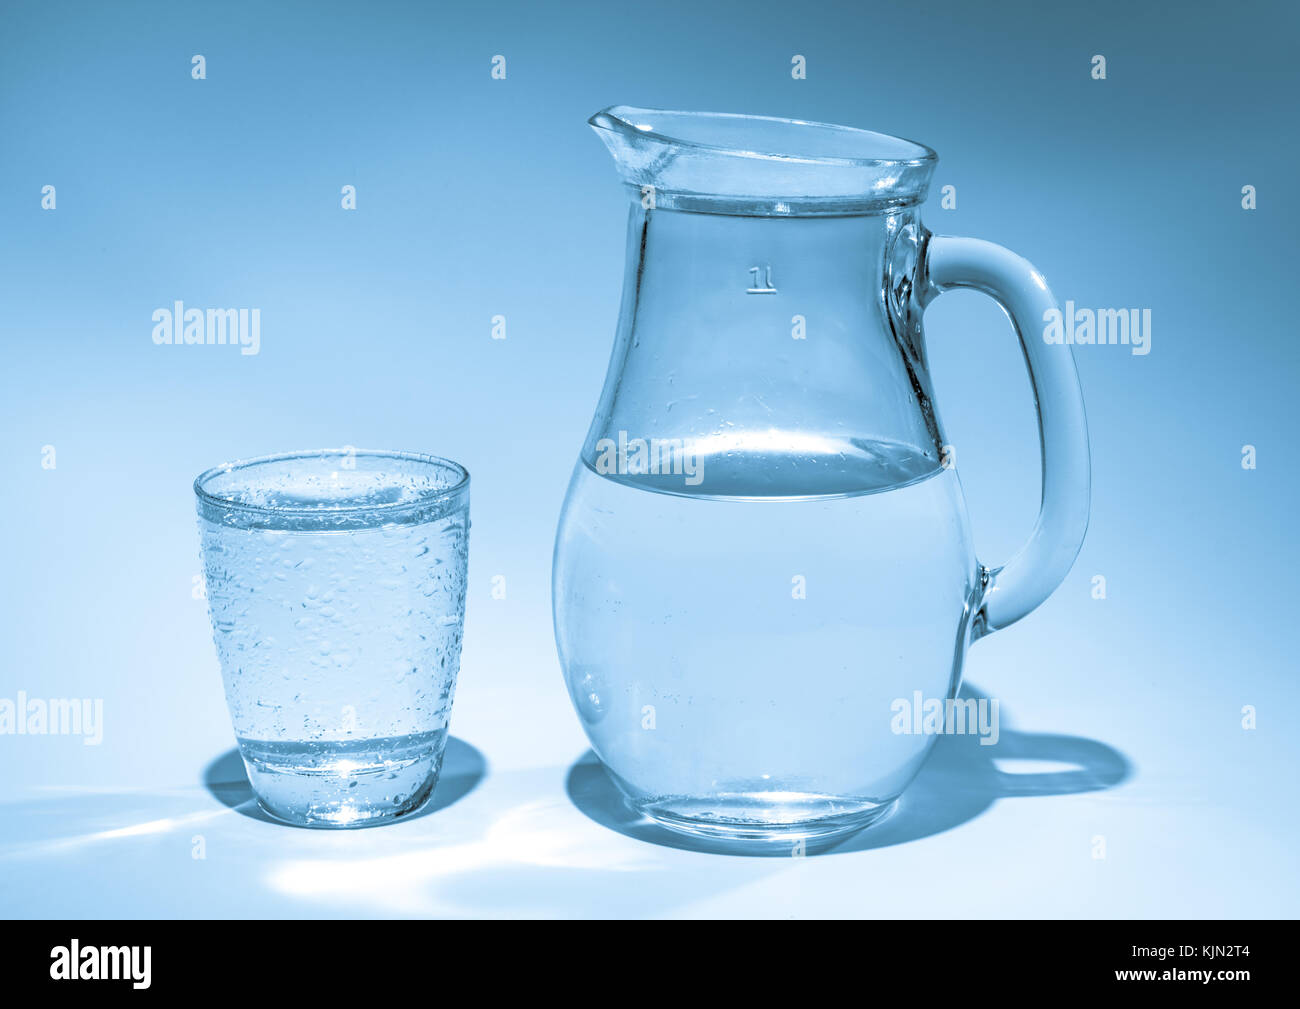 Jarra y vidrio del agua imagen de archivo. Imagen de claro - 119994523